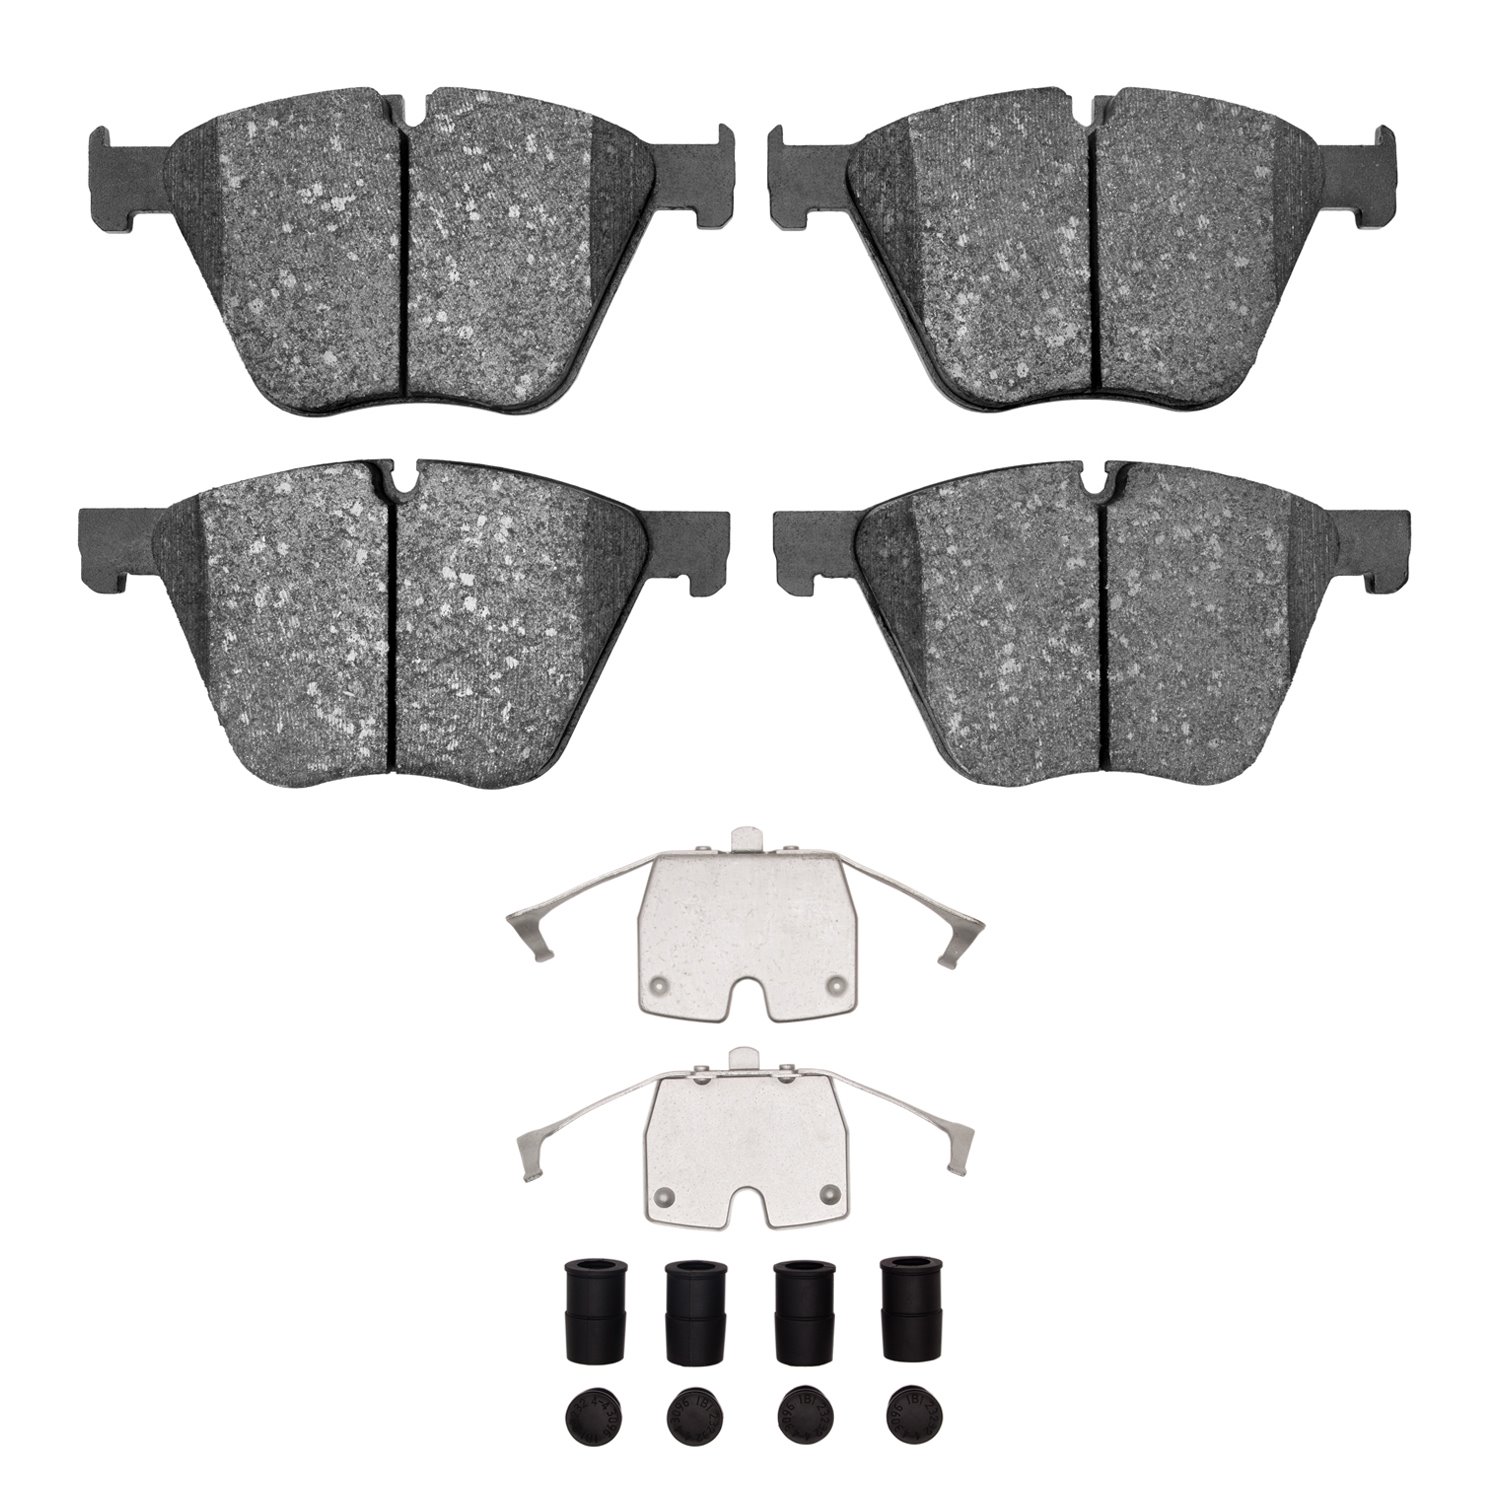 Semi-Metallic Brake Pads & Hardware Kit, 2010-2019 BMW, Position: Front